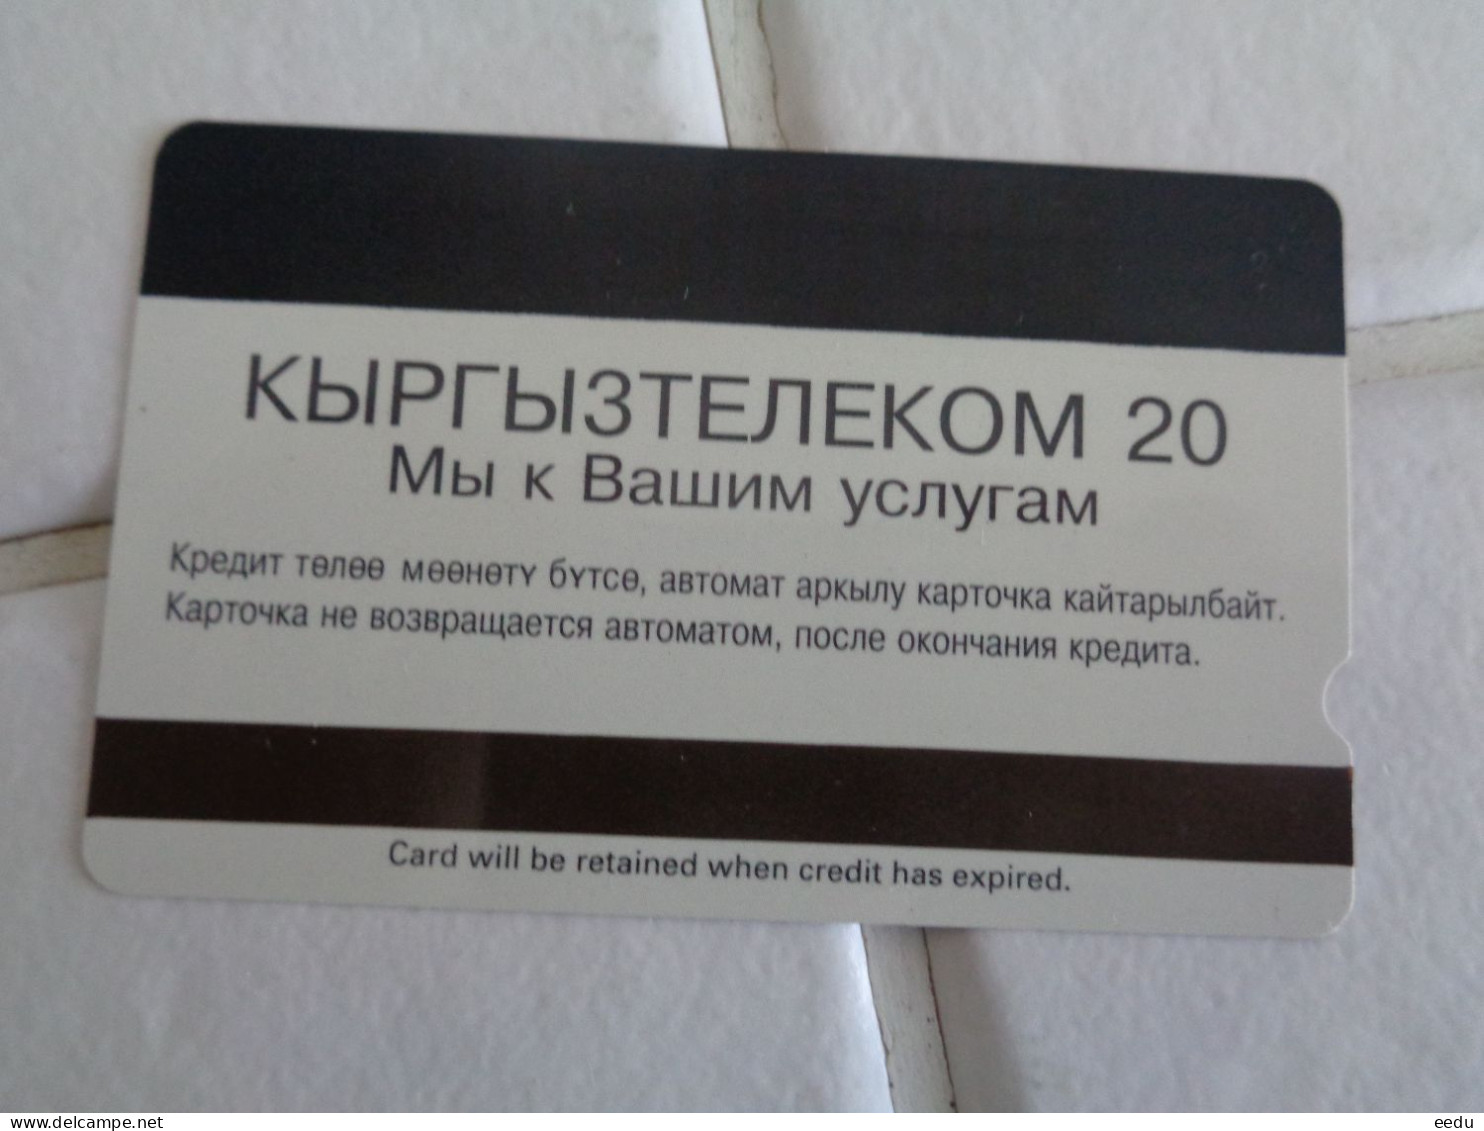 Kyrgyzstan Phonecard - Kyrgyzstan